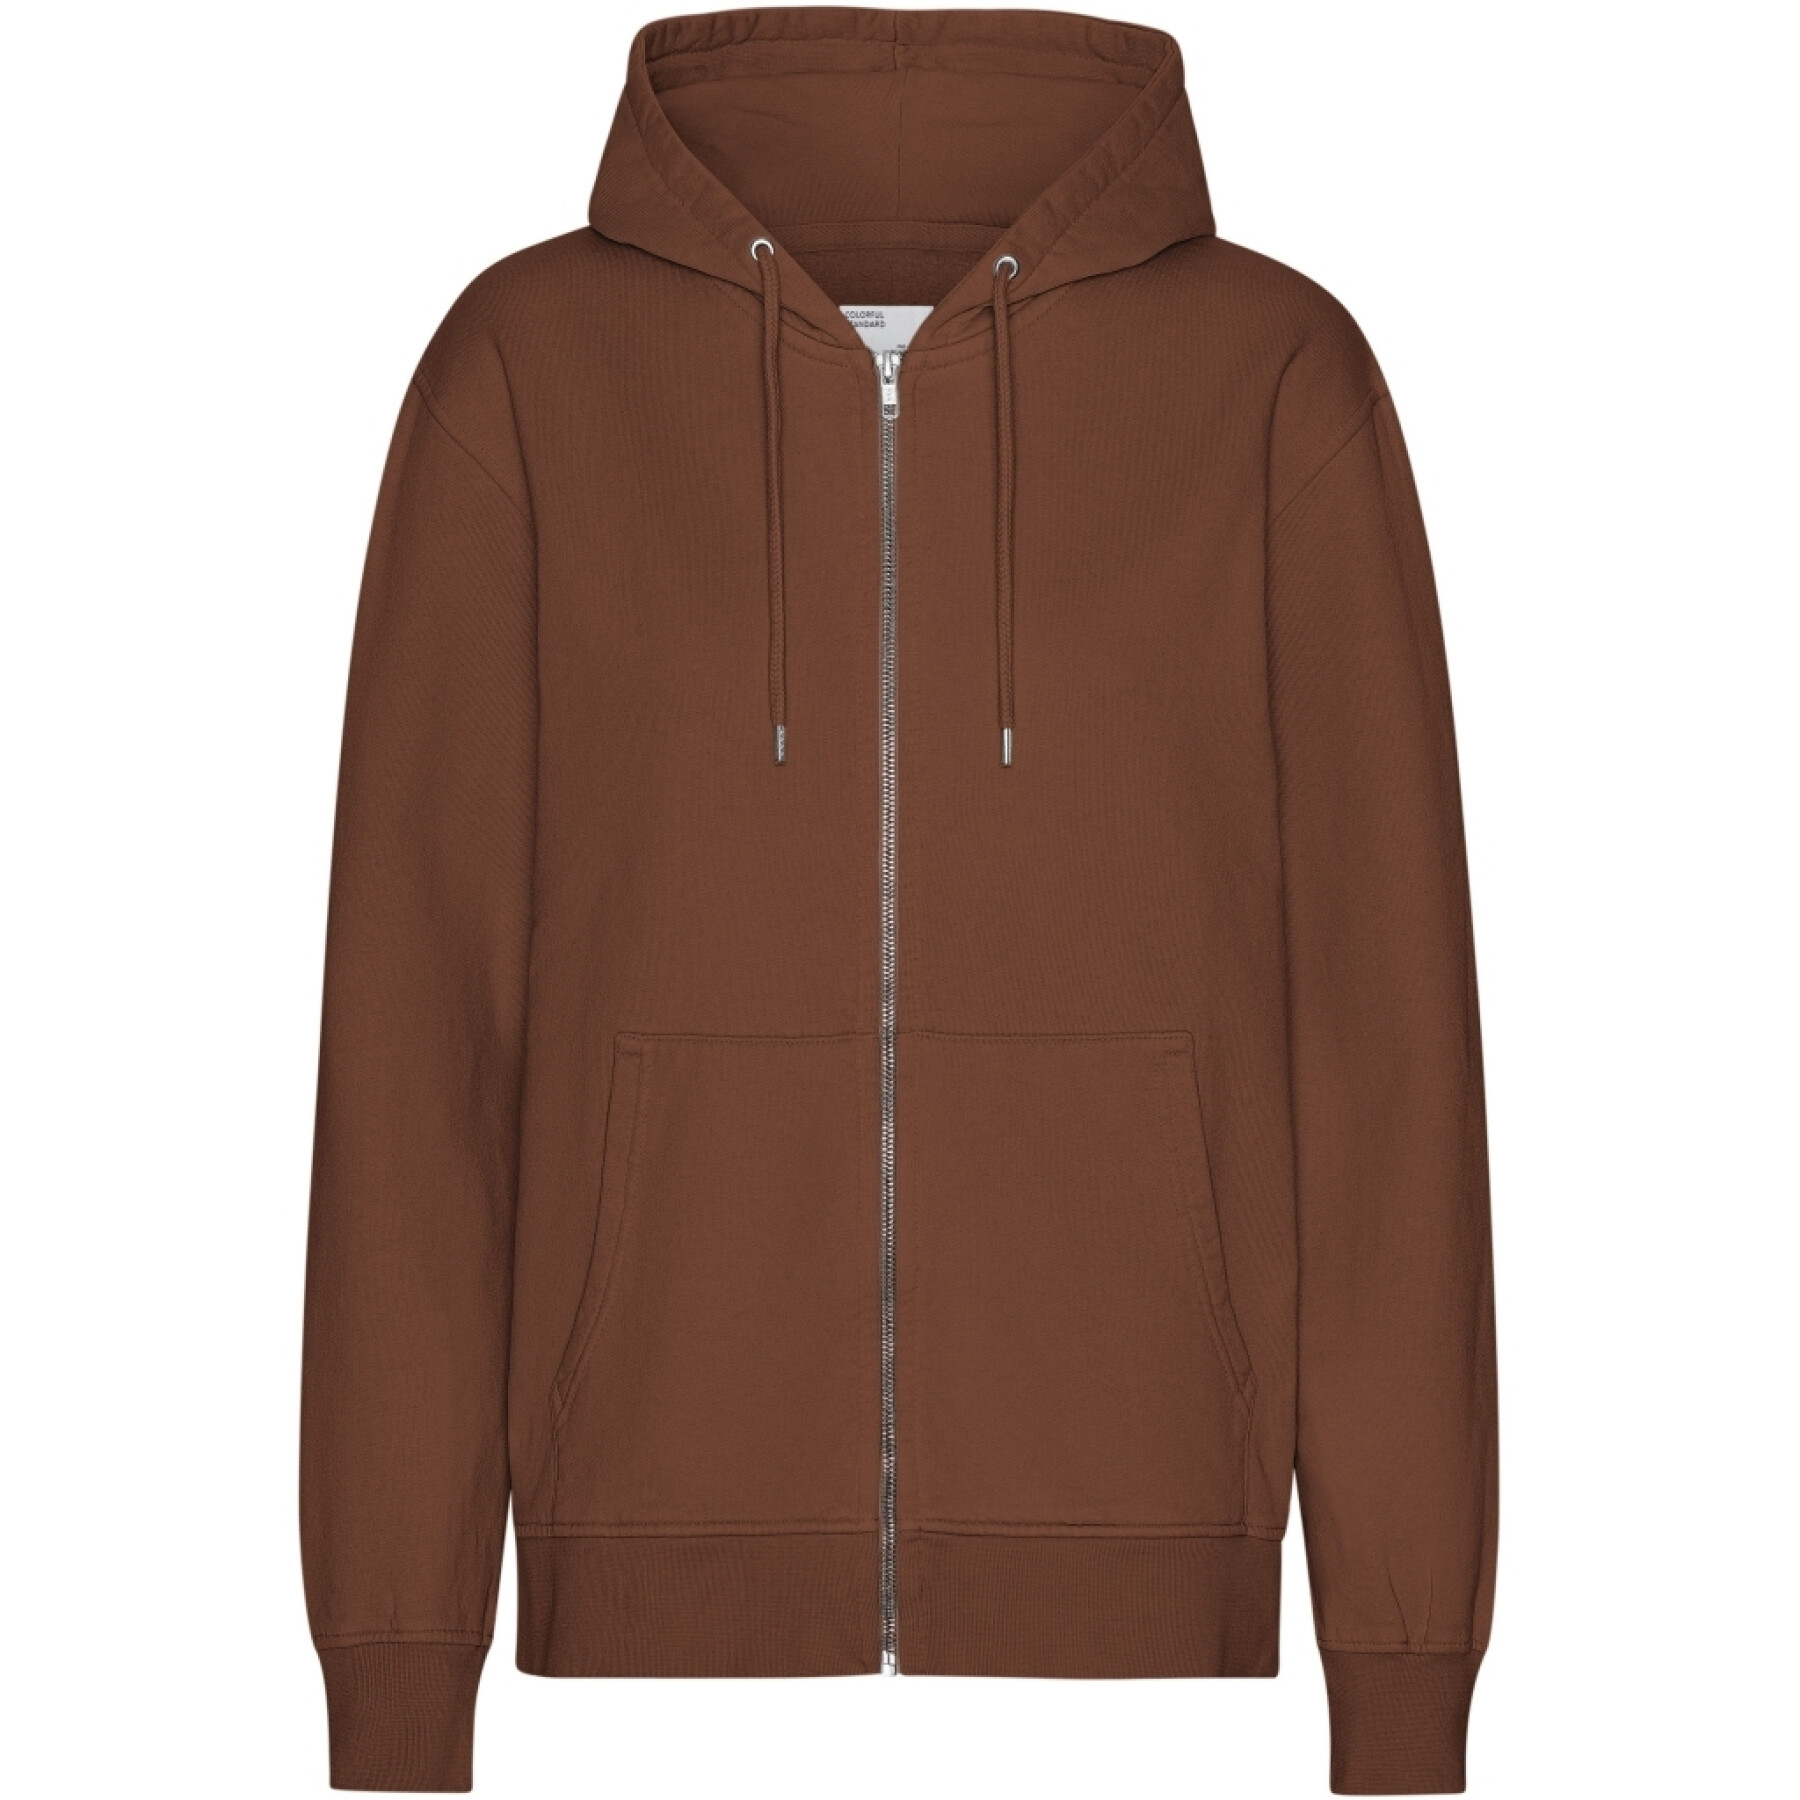 Zip-up hoodie Colorful Standard Classic Organic Cinnamon Brown